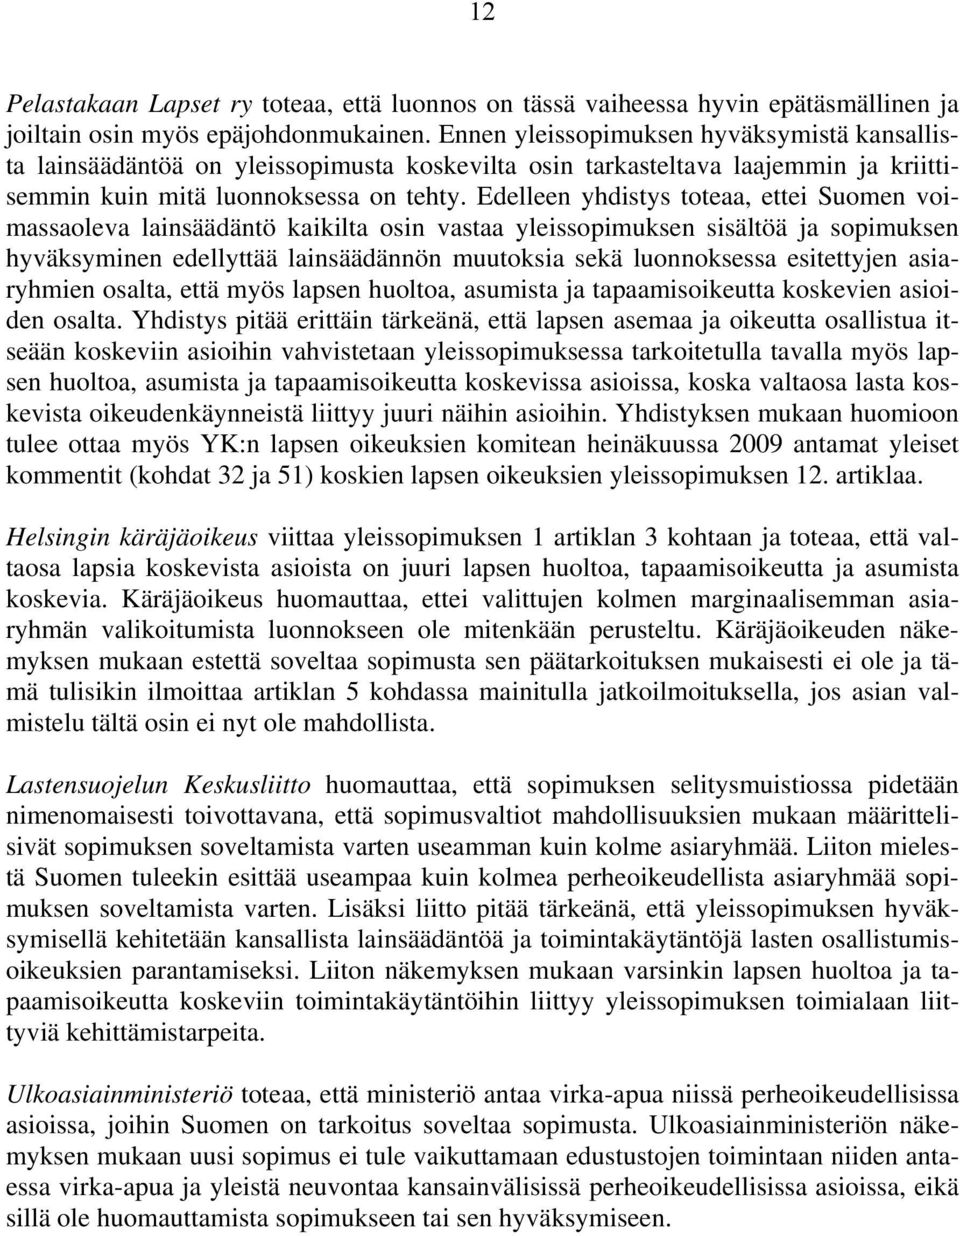 Edelleen yhdistys toteaa, ettei Suomen voimassaoleva lainsäädäntö kaikilta osin vastaa yleissopimuksen sisältöä ja sopimuksen hyväksyminen edellyttää lainsäädännön muutoksia sekä luonnoksessa